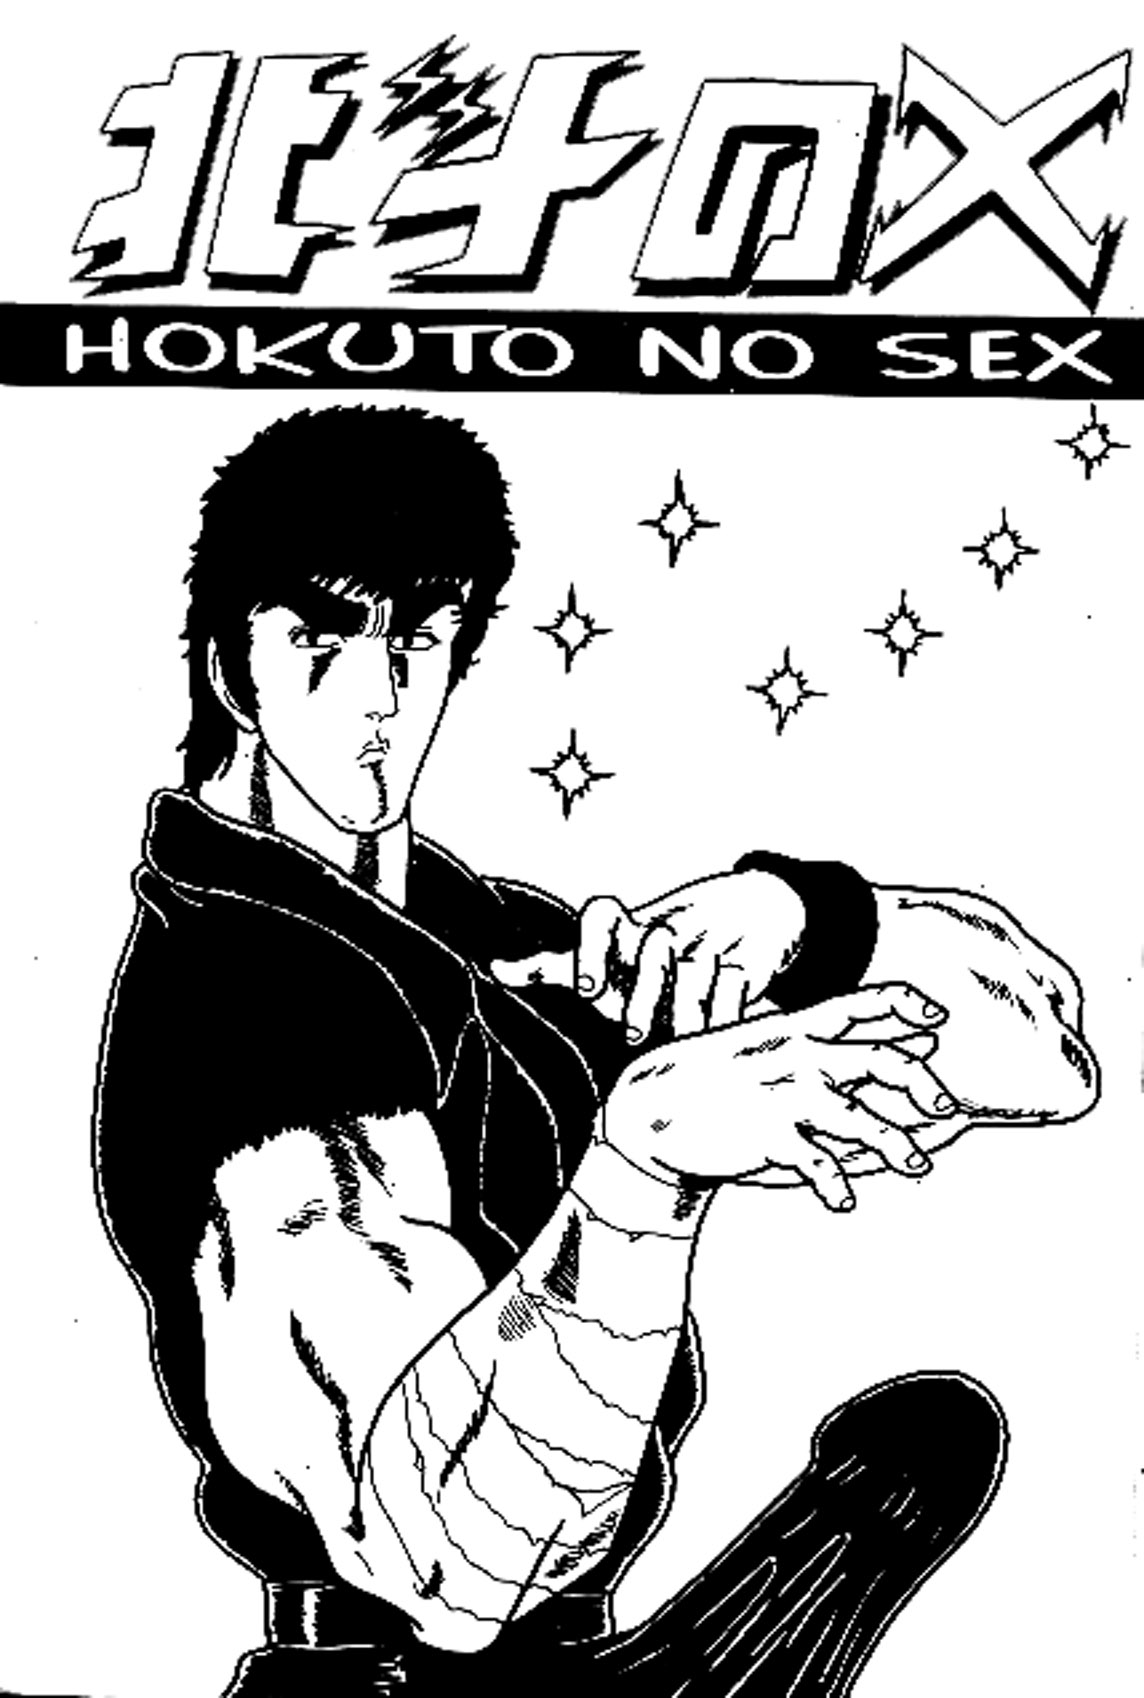 Hokuto No Ken - Hokuto No Sex